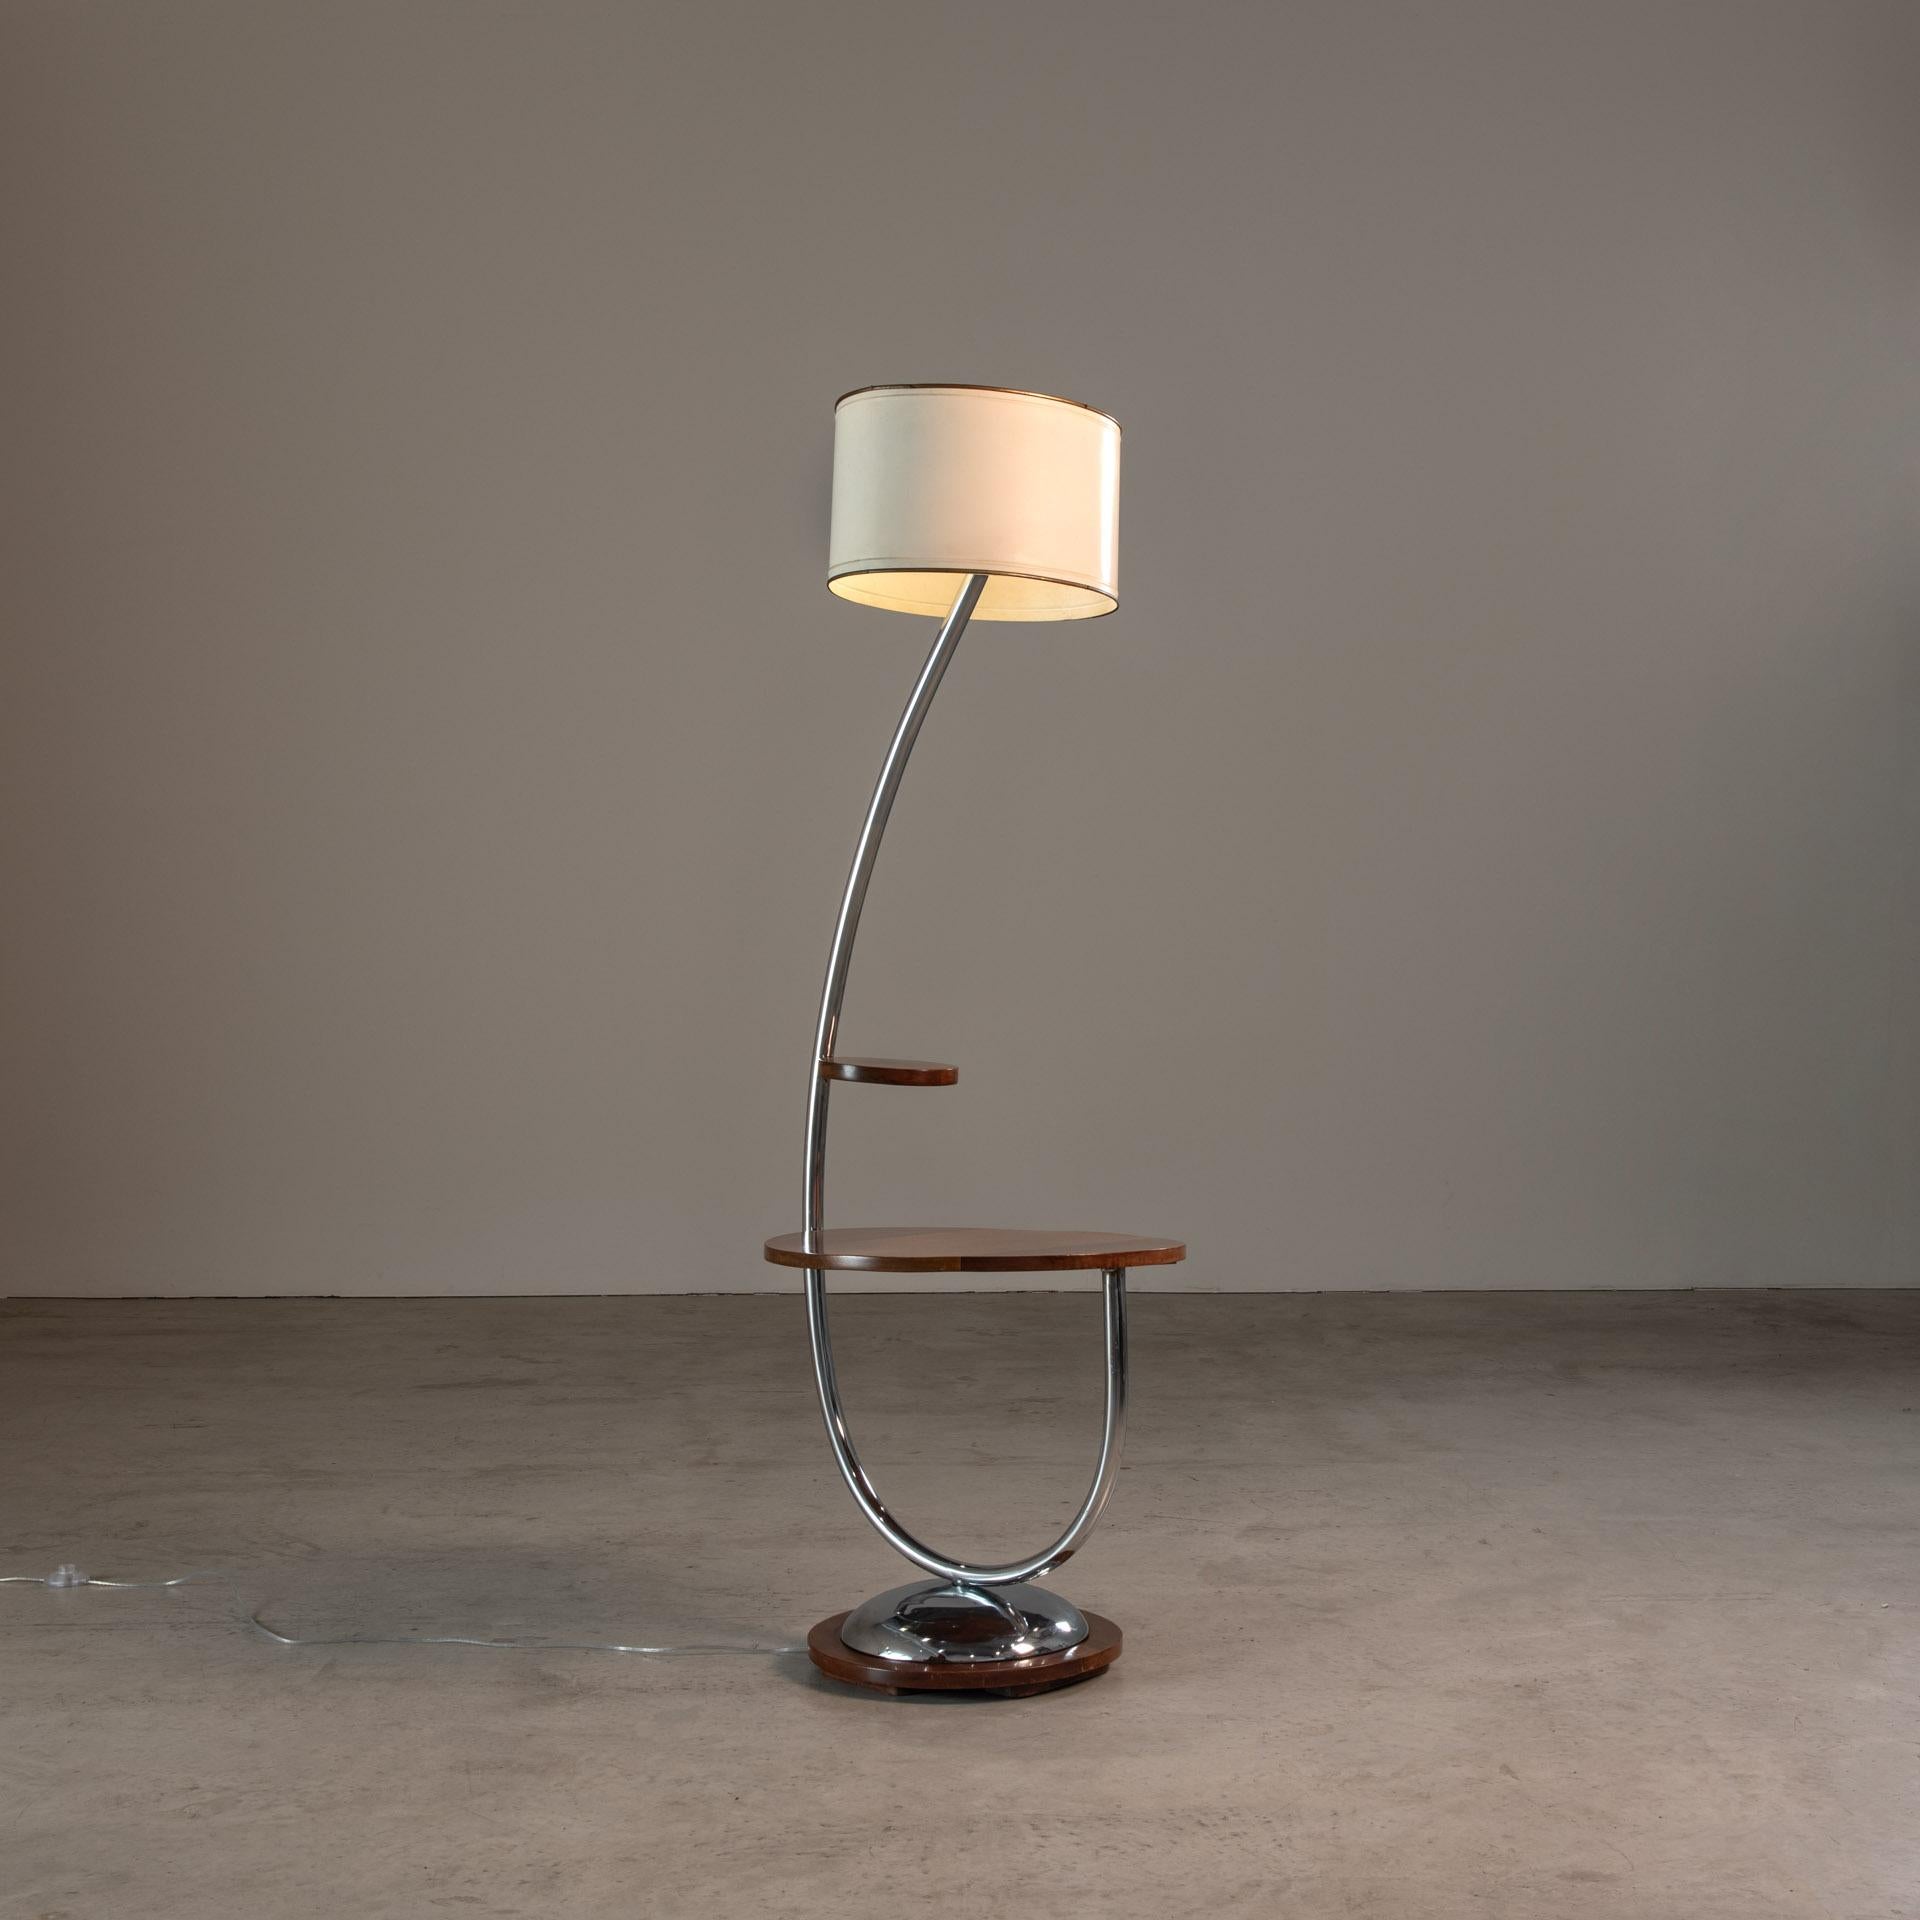 La table d'appoint avec lampadaire intégré, une création magistrale de John Graz, constitue la quintessence du mobilier brésilien du milieu du XXe siècle. Cette pièce illustre non seulement l'utilisation innovante de matériaux locaux, mais aussi la